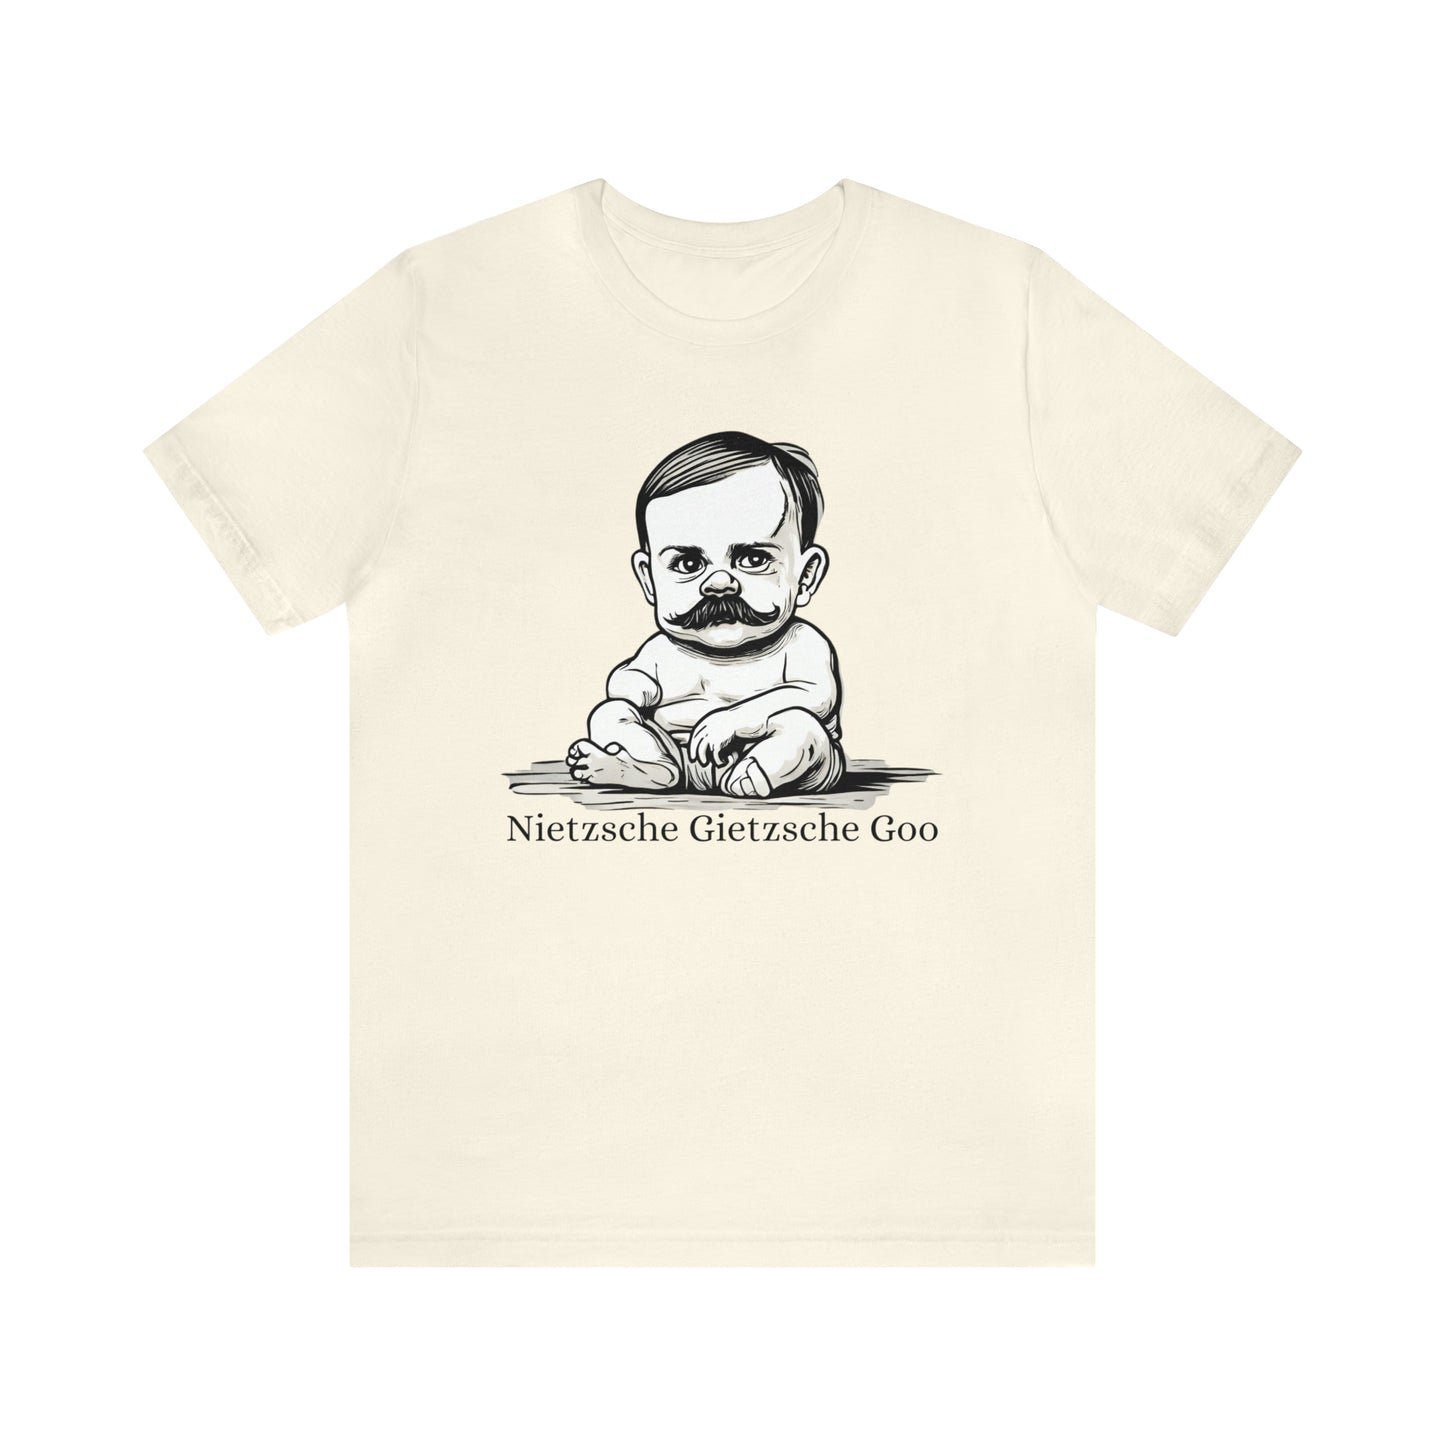 Nietzsche Gietzsche Goo (Baby N)(Unisex)